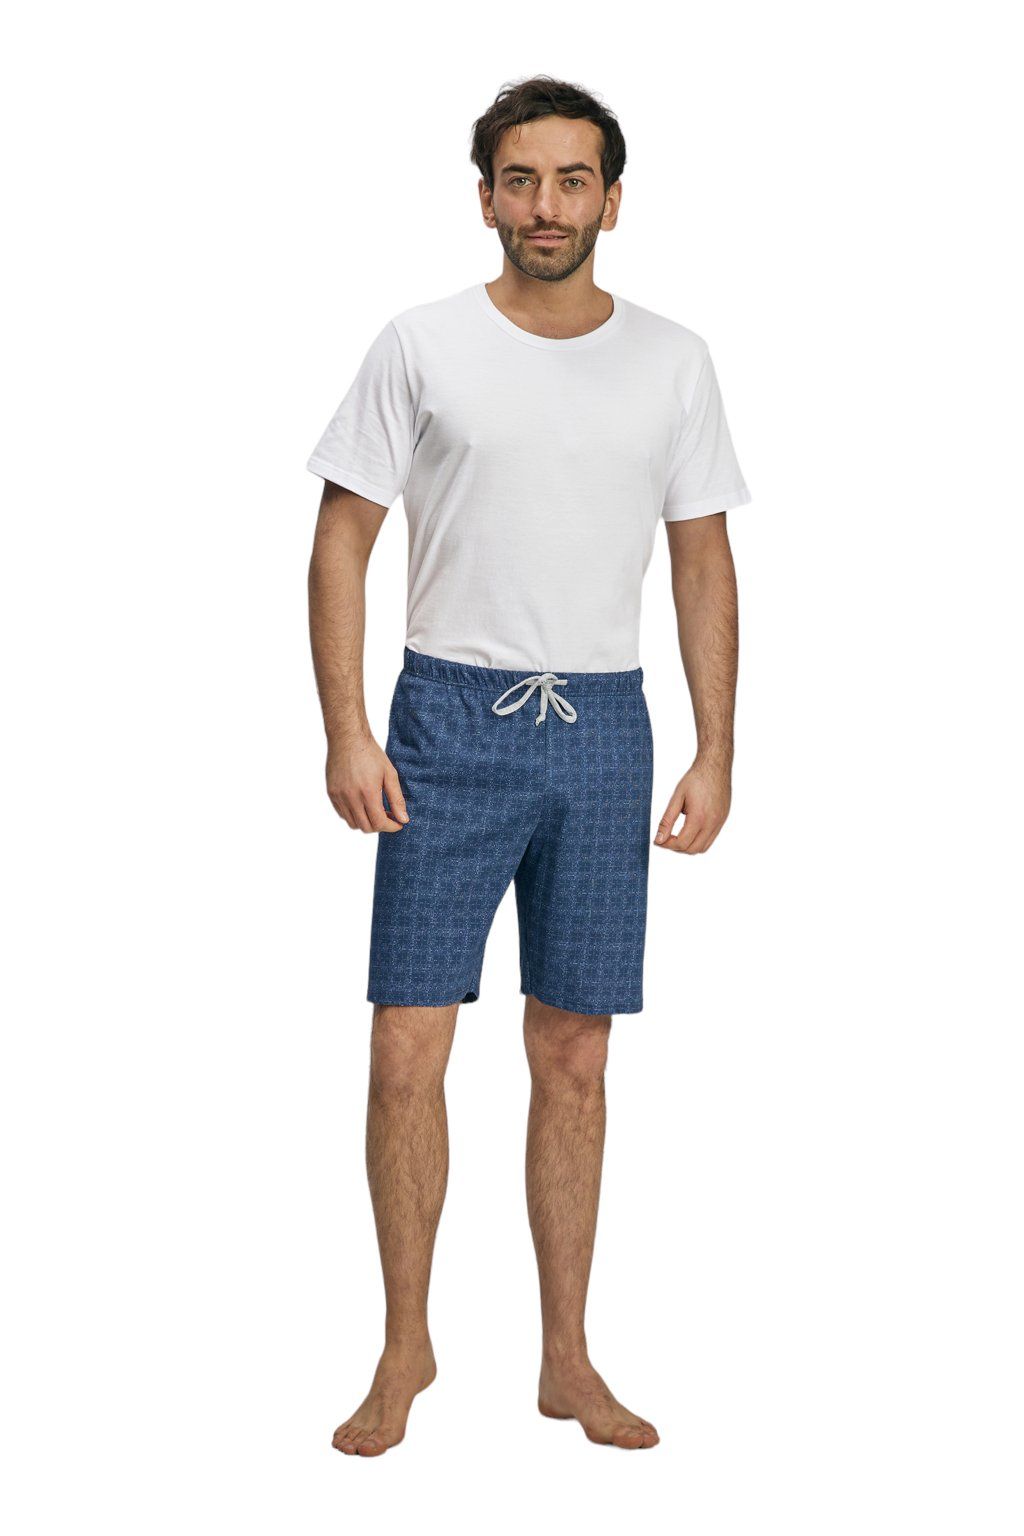 Pánské pyžamové kalhoty s krátkými nohavicemi, 204123 466, modrá - Velikost XXL Wadima